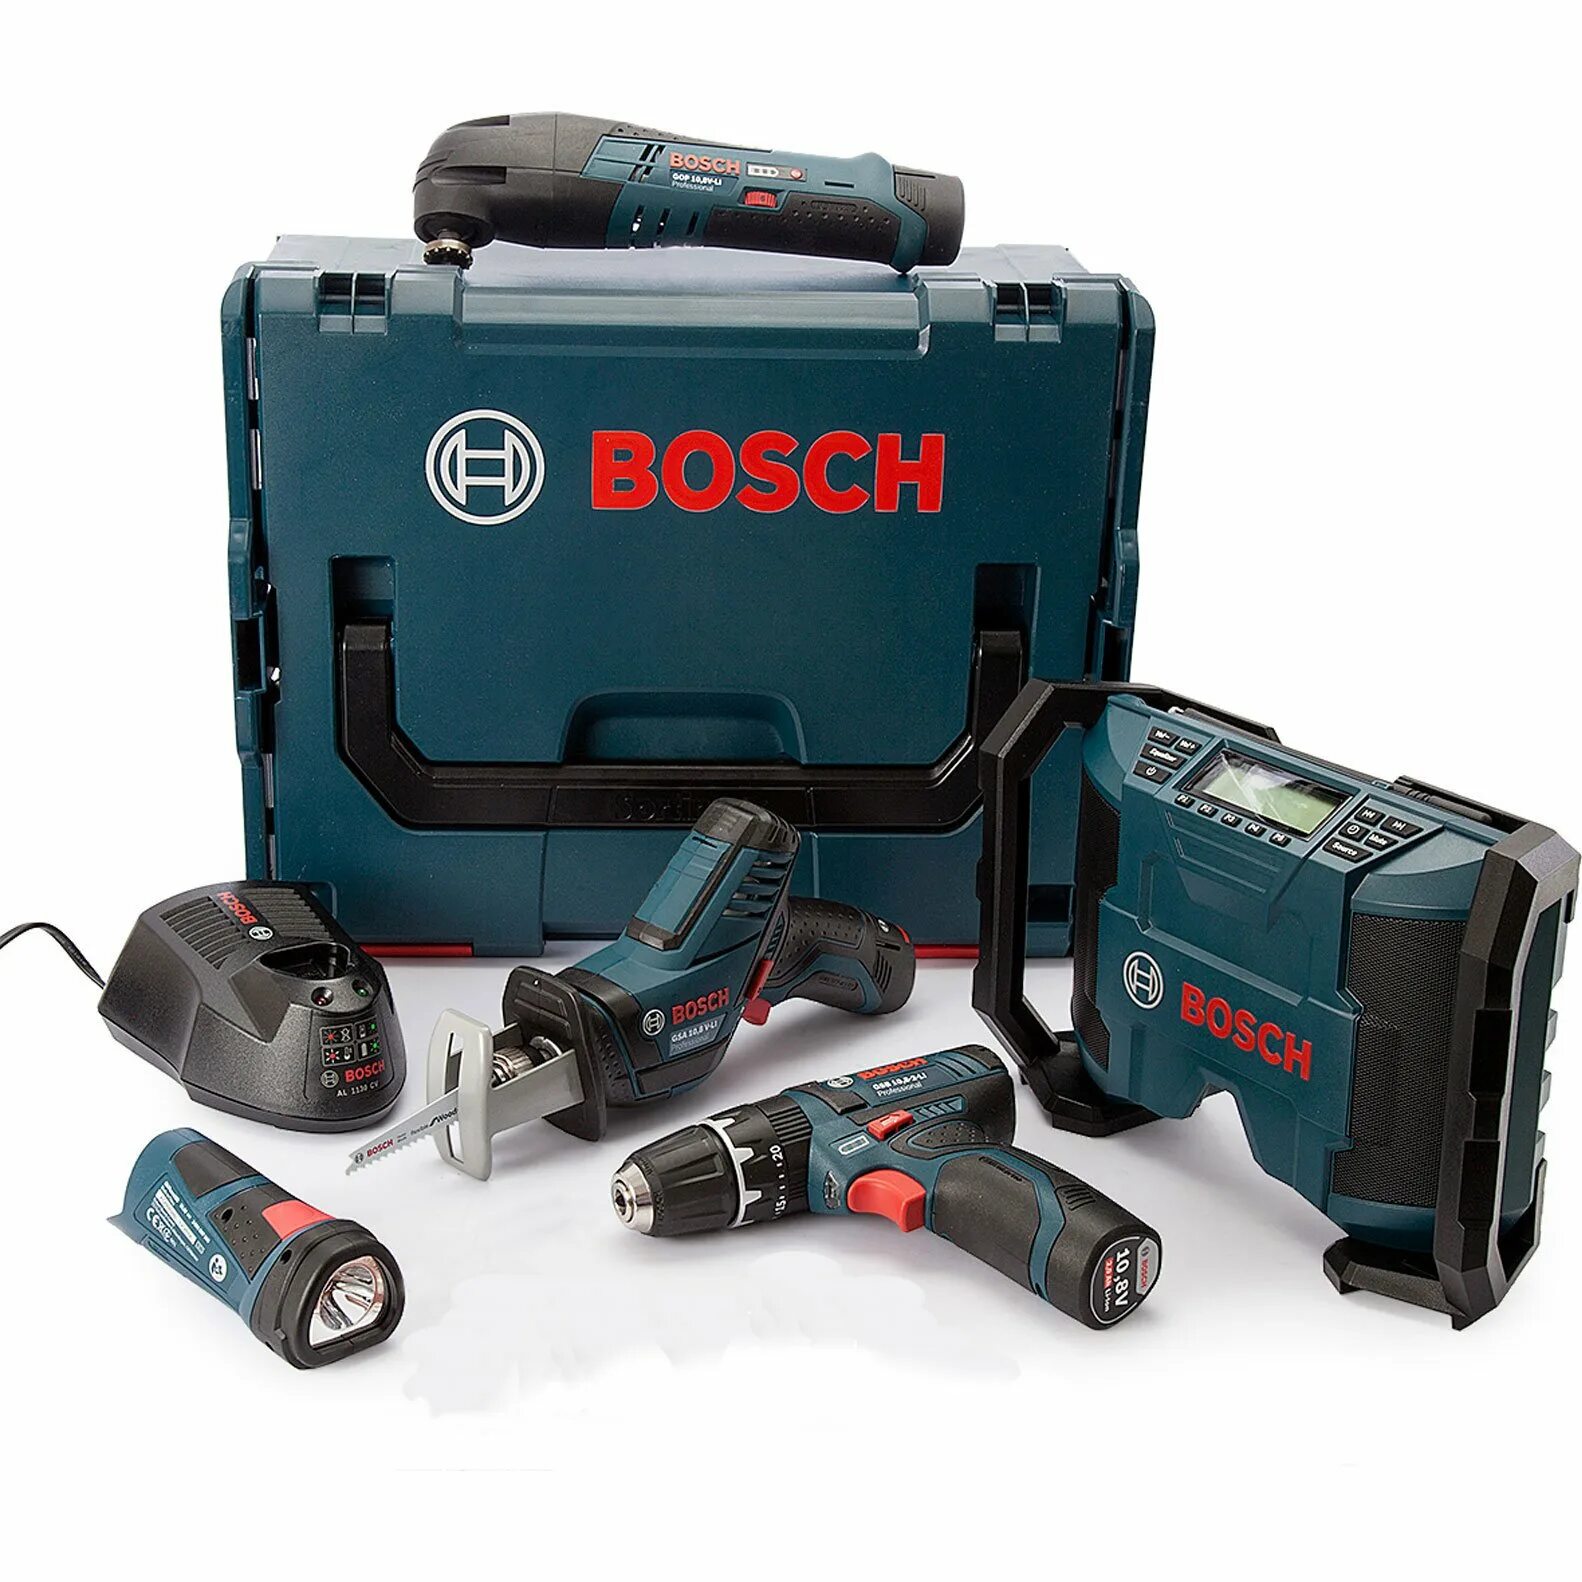 Бош купить в перми. Bosch 12v инструмент. Аккумуляторный инструмент Bosch 12v. Bosch 12v комплекты. Bosch 12v линейка.